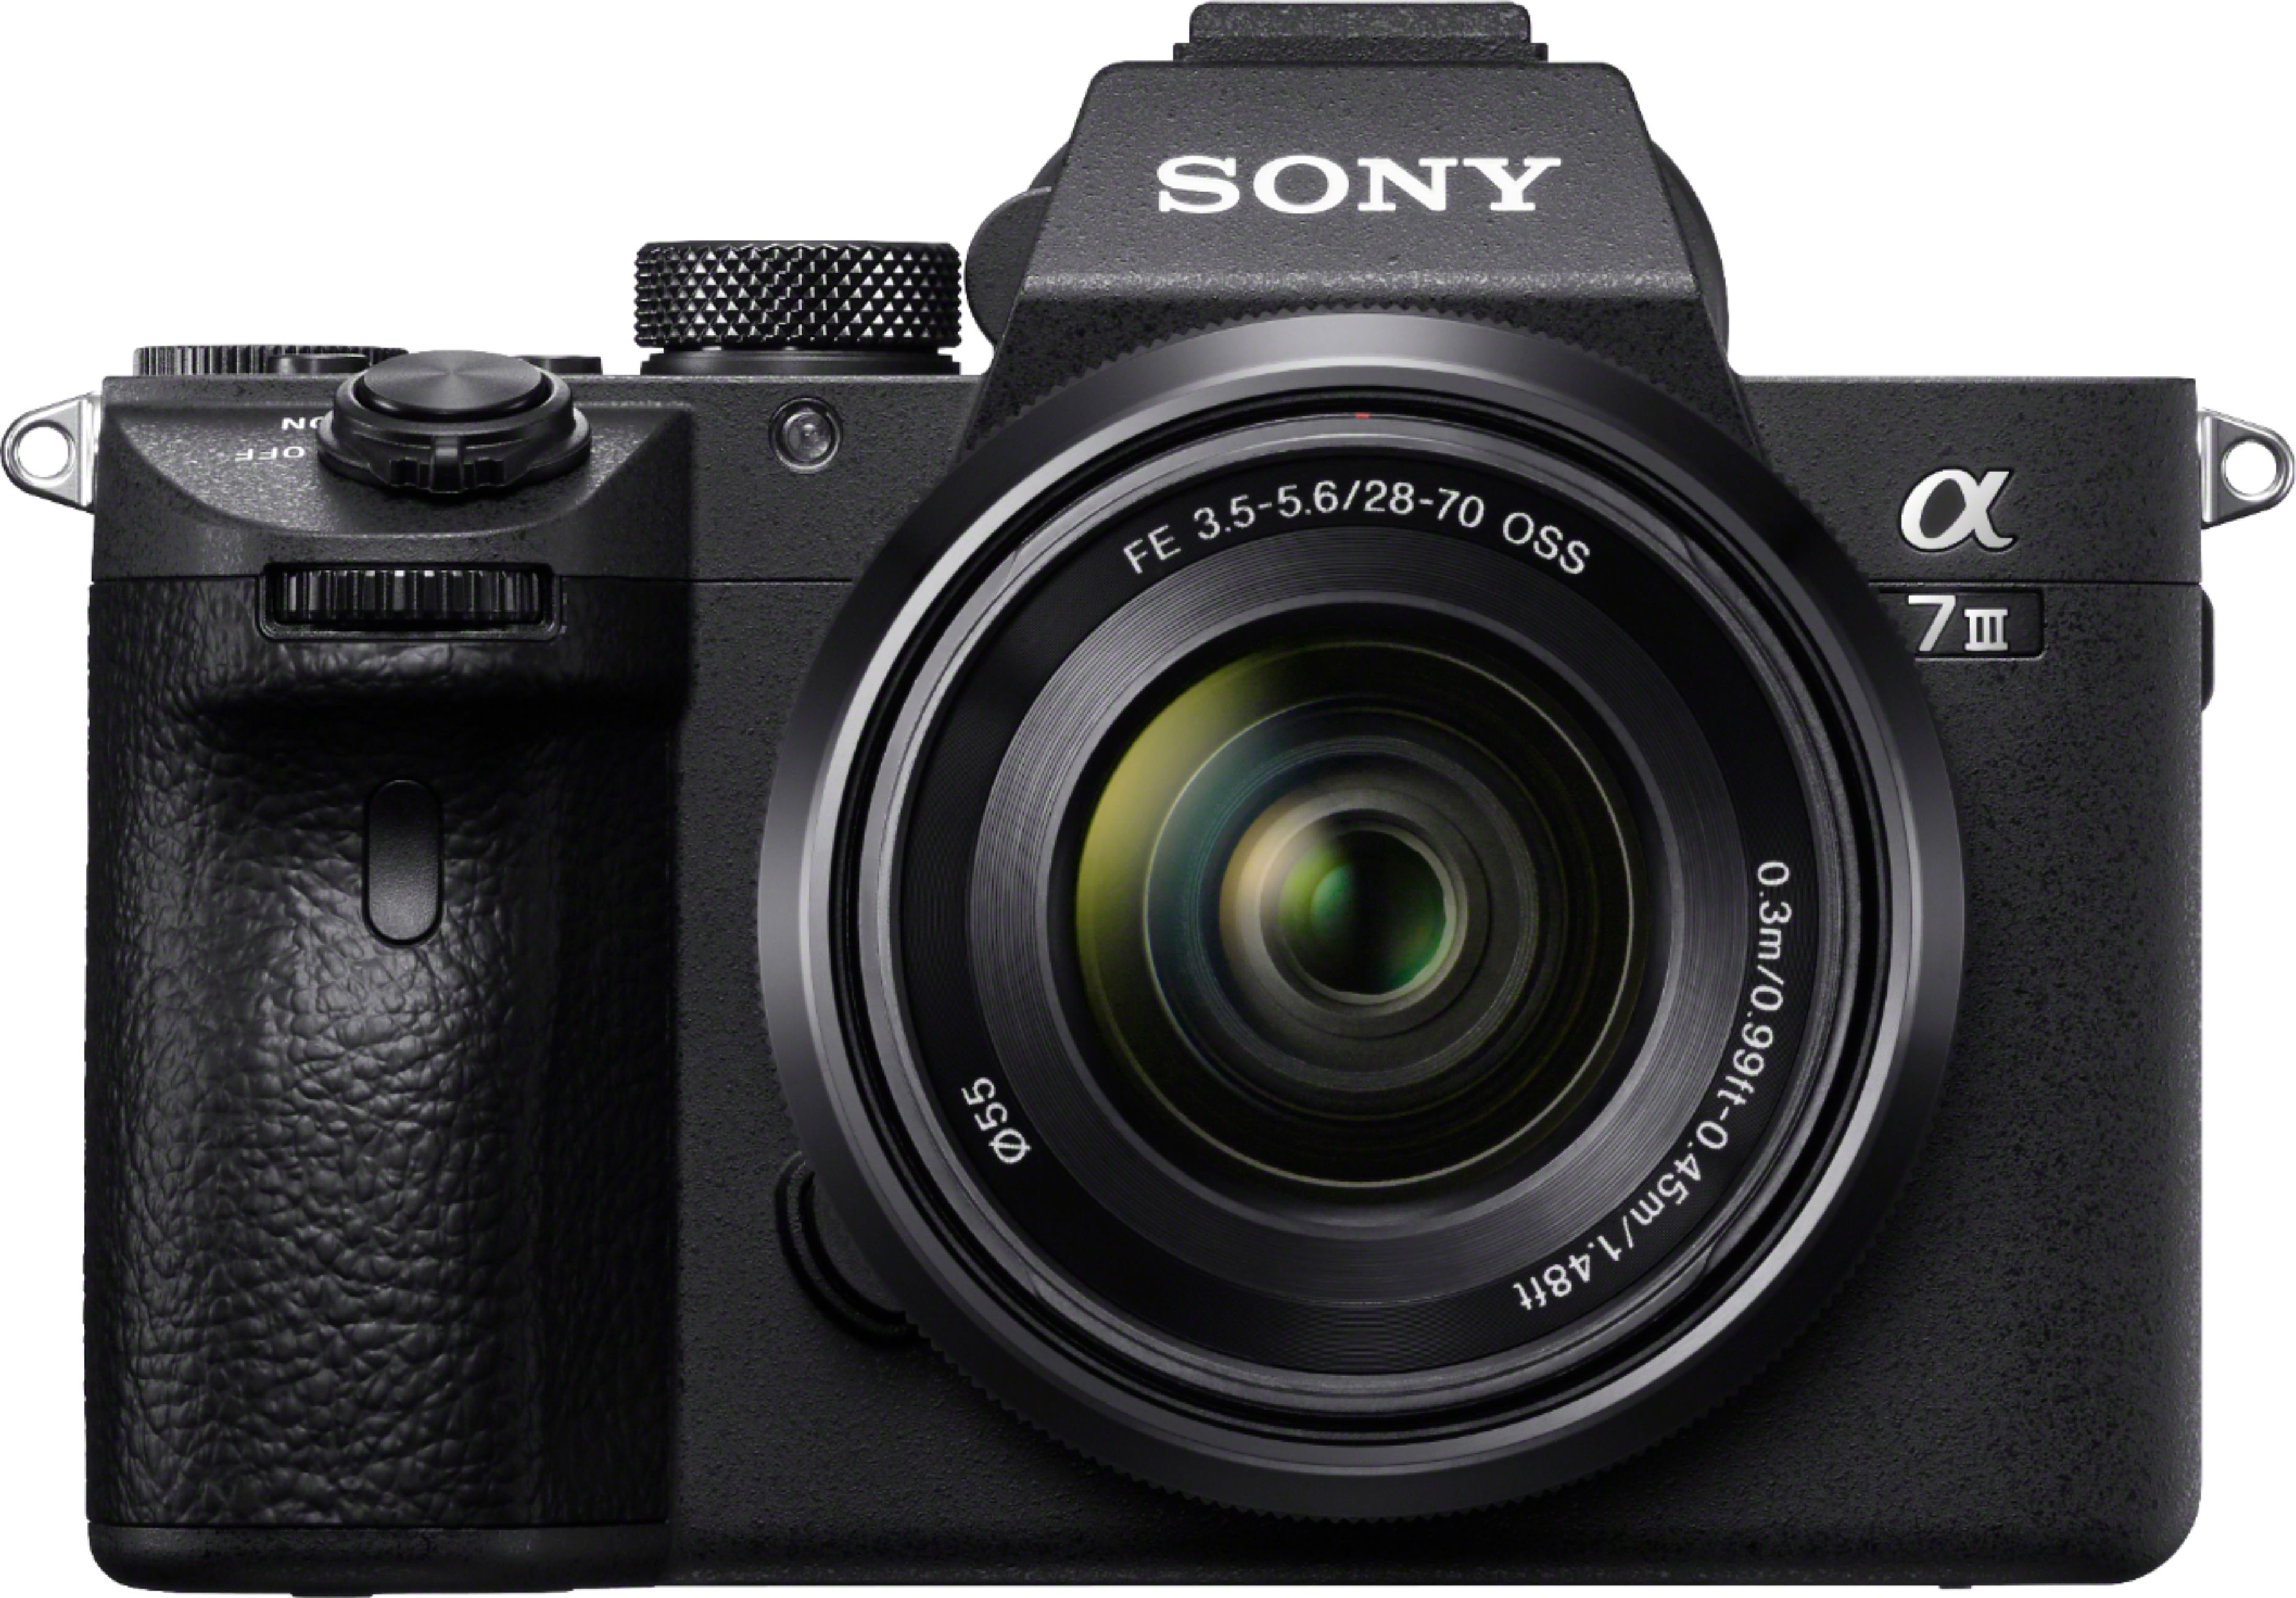 Installatie Interactie Terug kijken Sony Alpha a7 III Mirrorless [Video] Camera with FE 28-70 mm F3.5-5.6 OSS  Lens Black ILCE7M3K/B - Best Buy